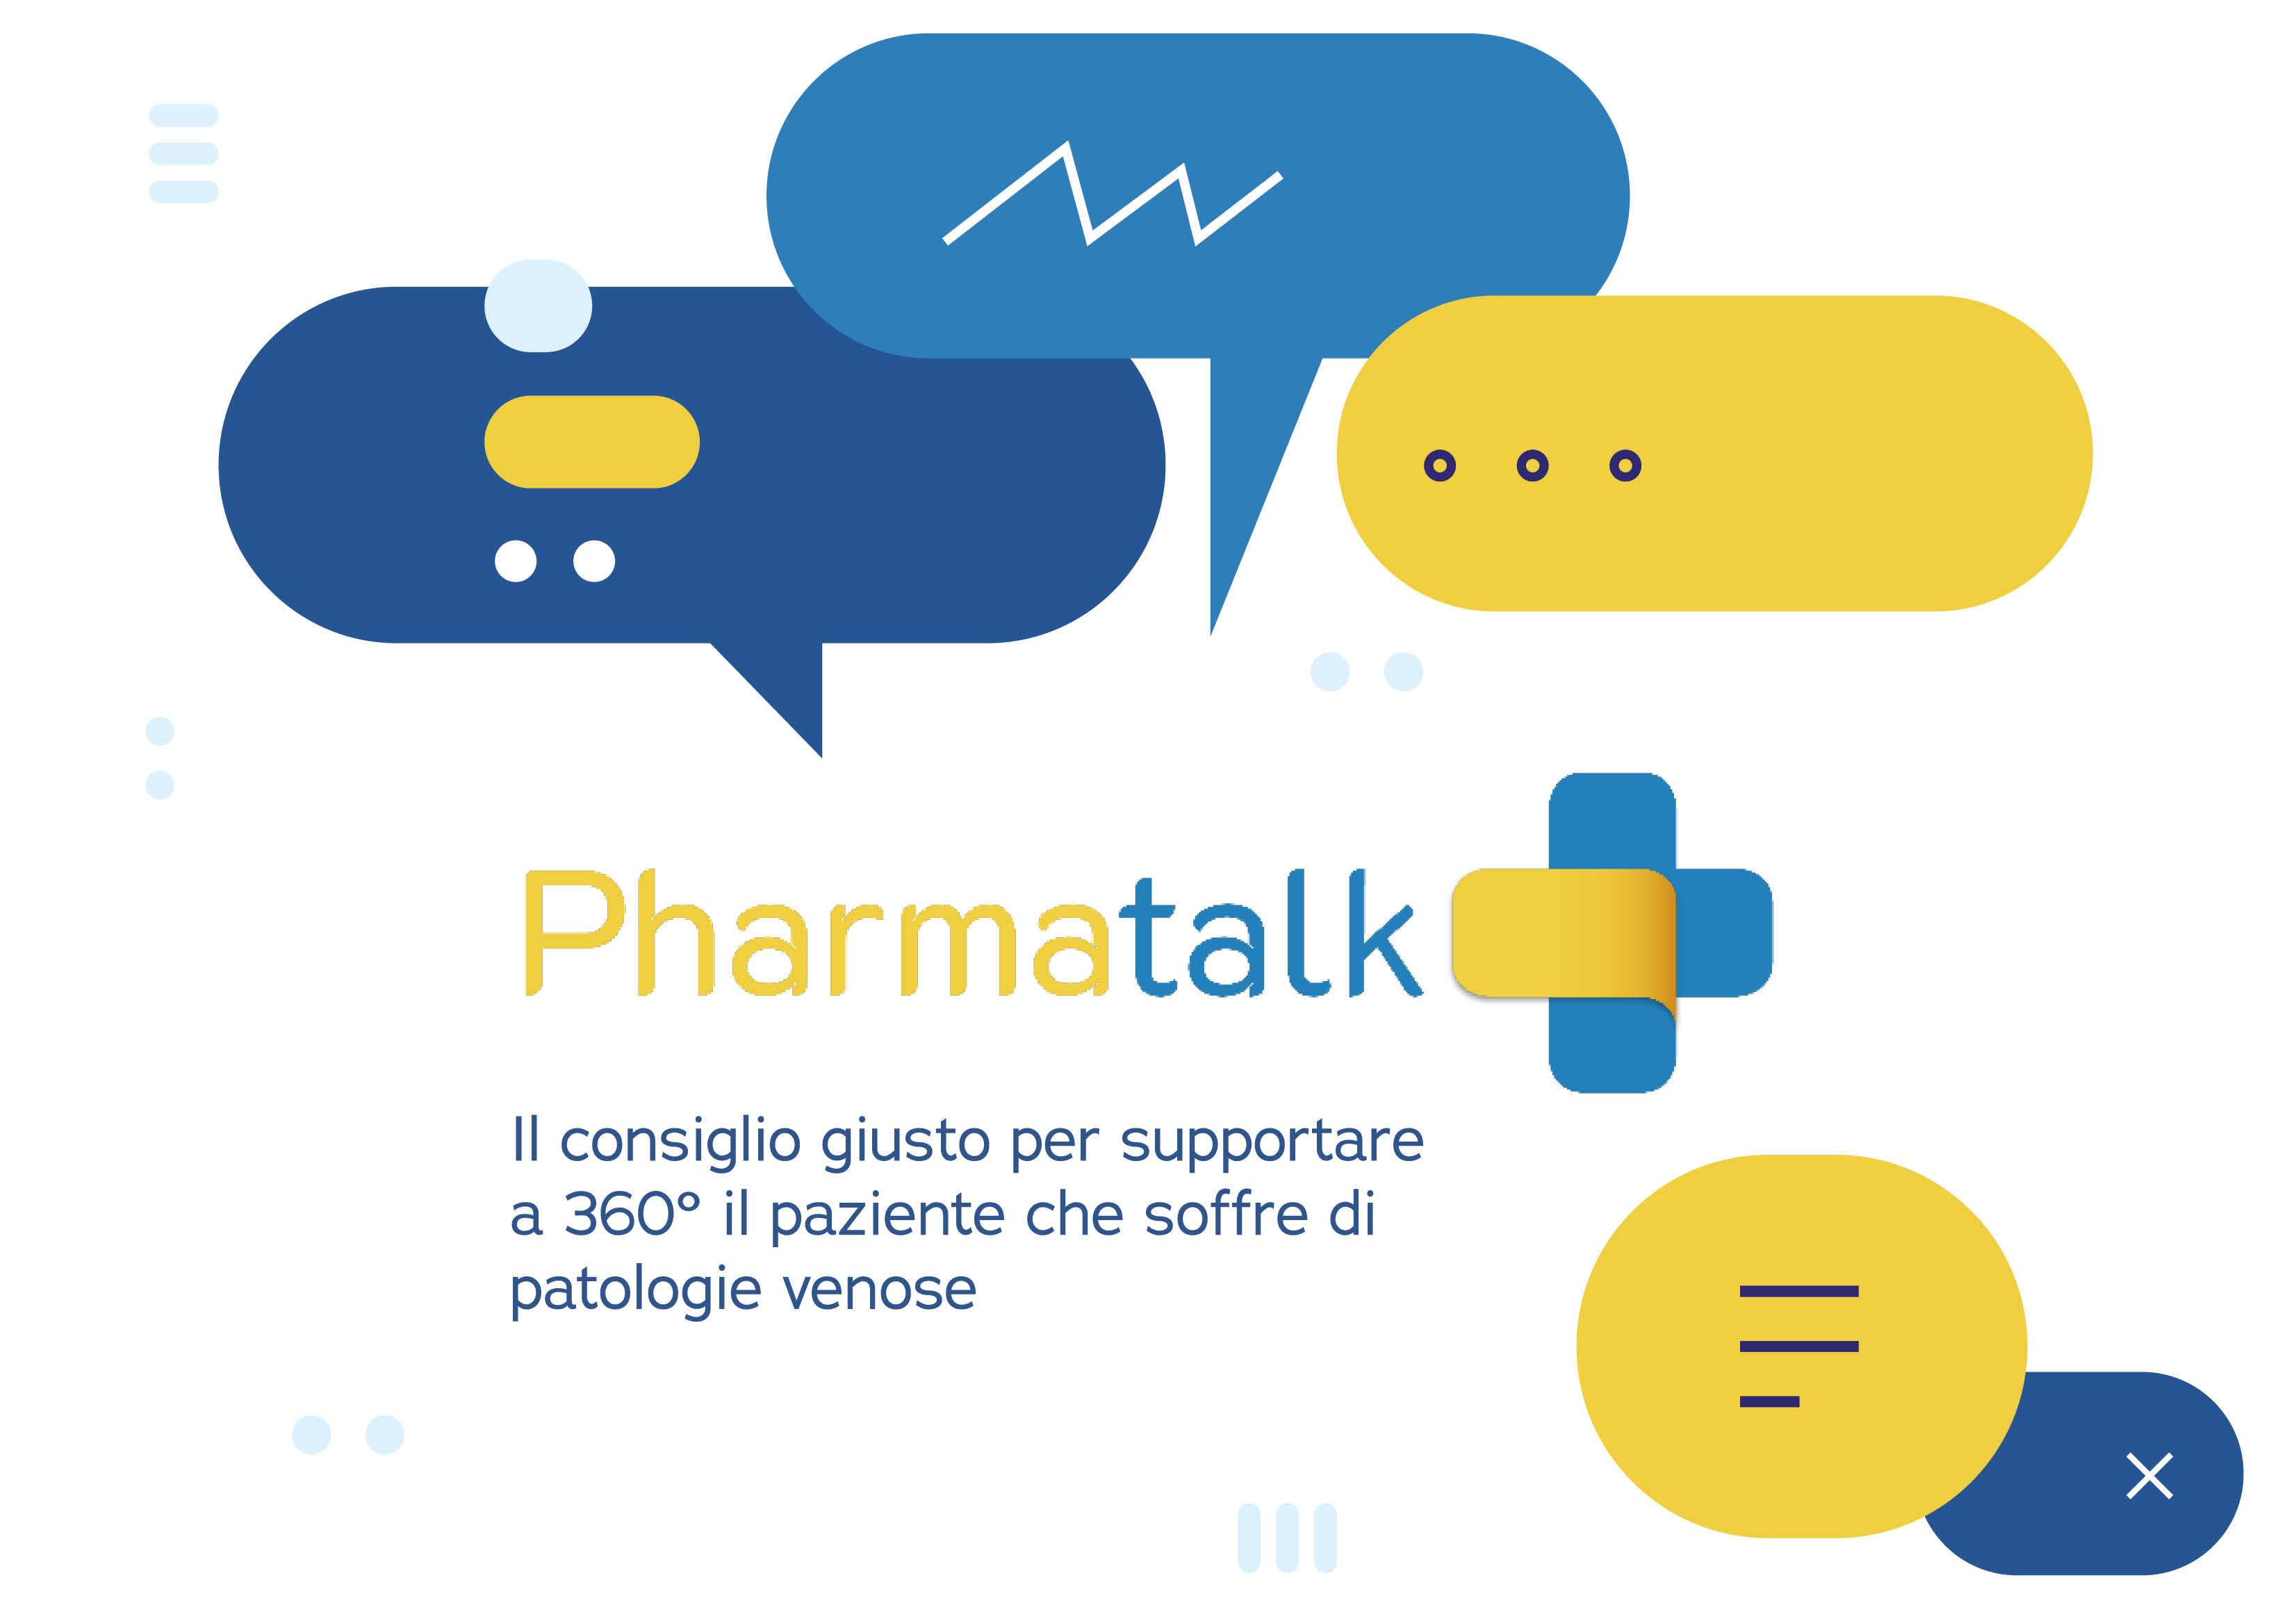 Pharma Talk - Il consiglio giusto per supportare a 360° il paziente che soffre di patologie venose